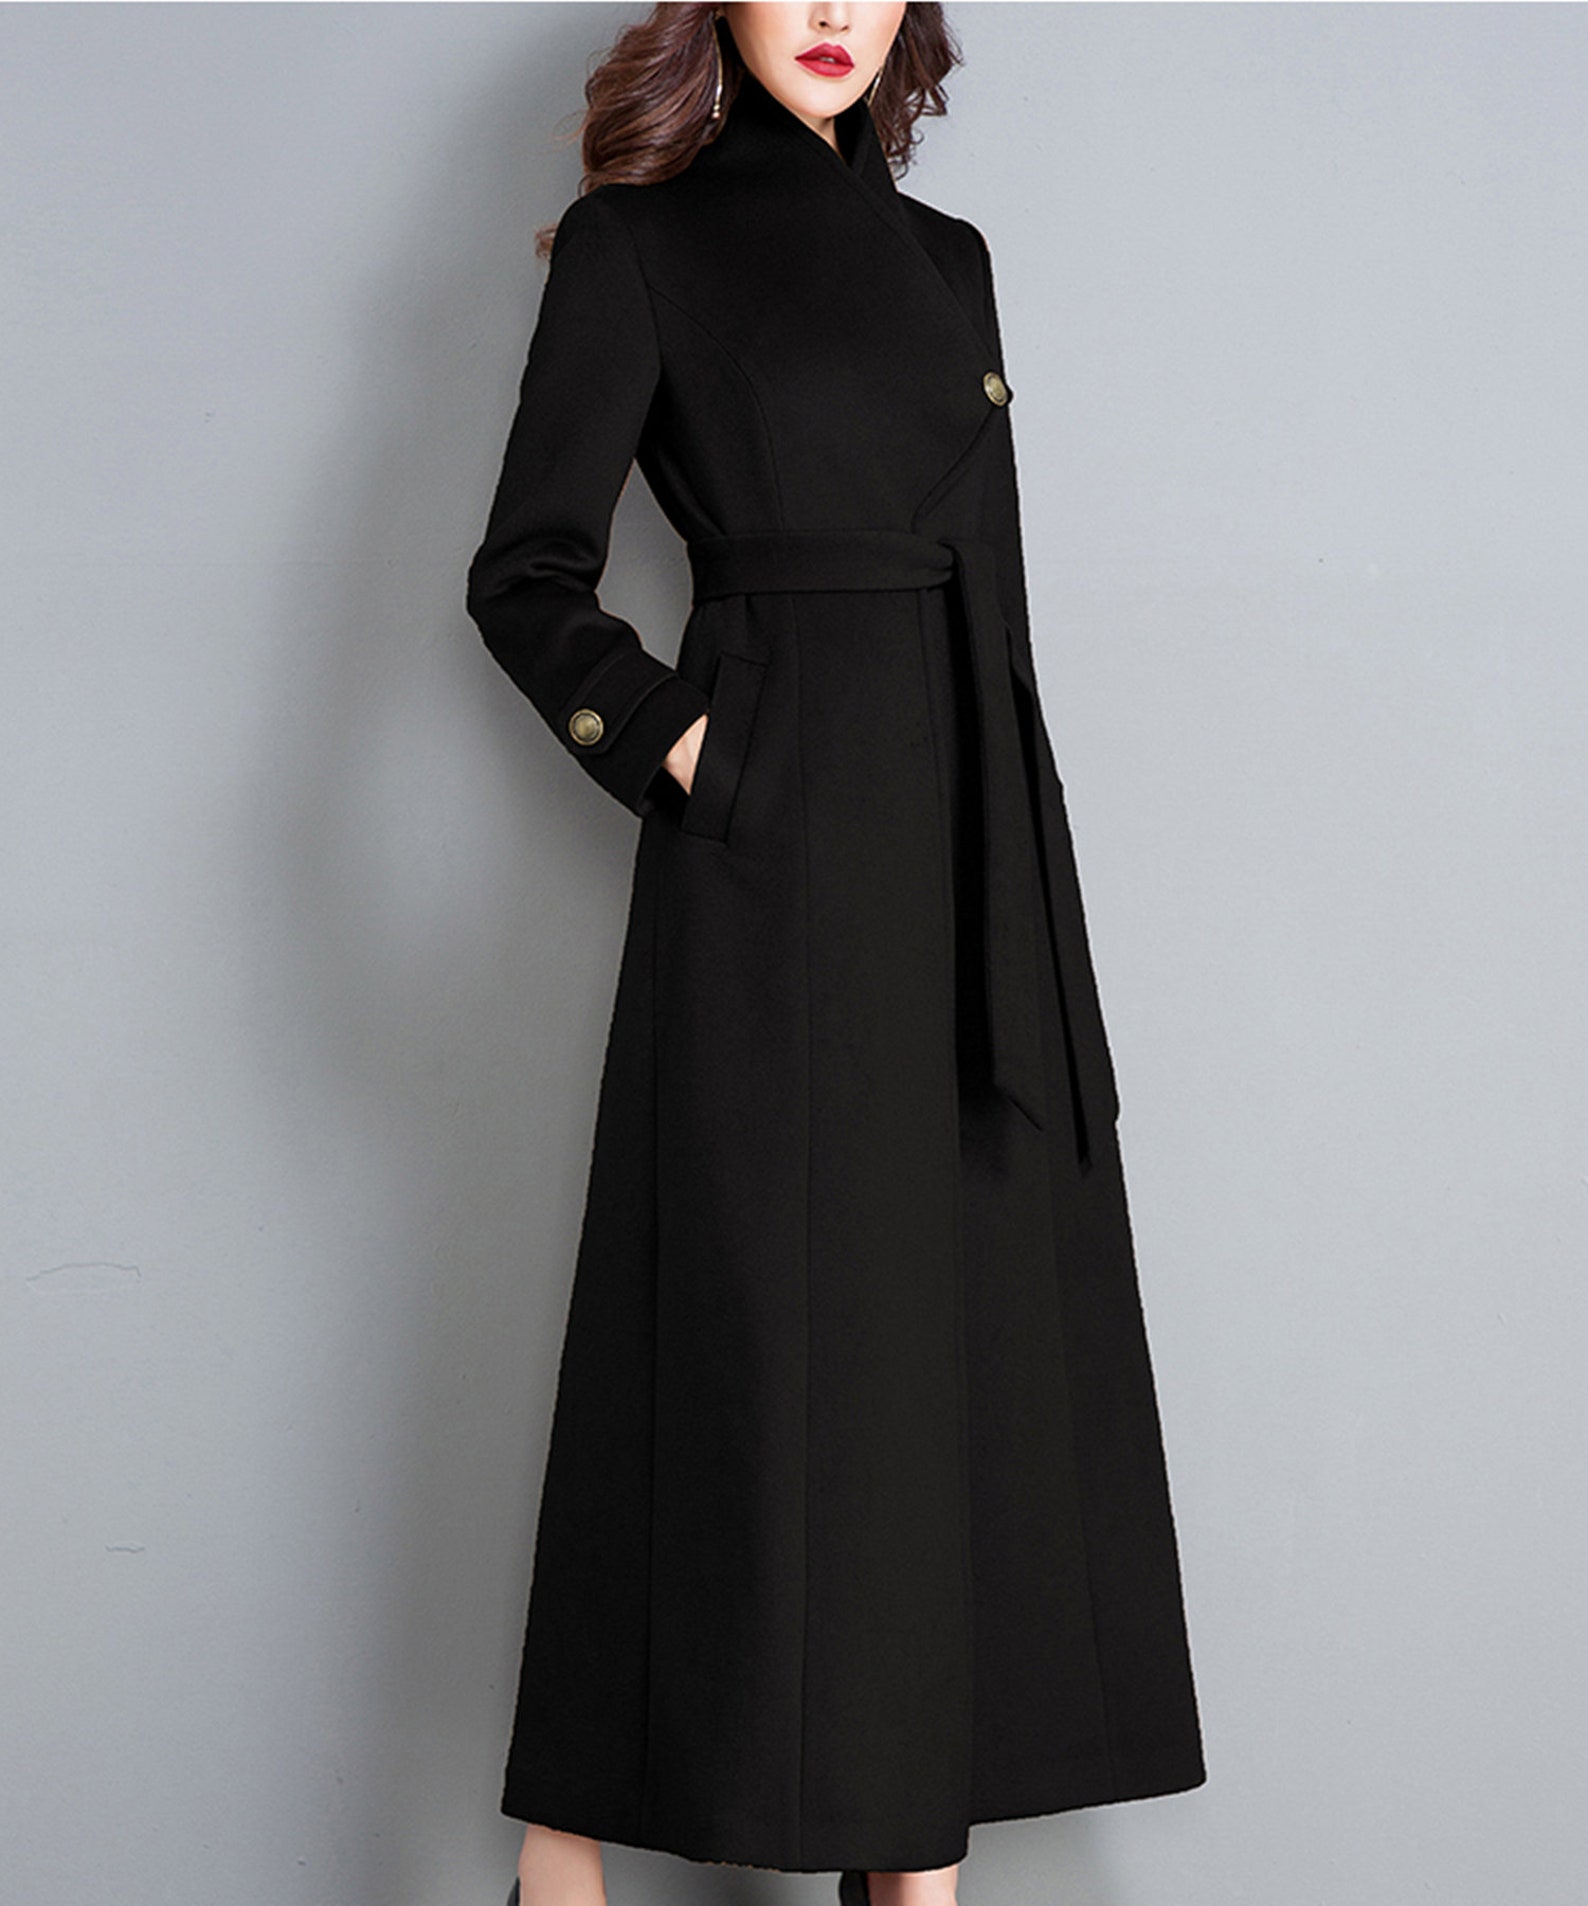 Black Coatwool Coatwomen Long Full Length Wool Jacket Warm - Etsy UK